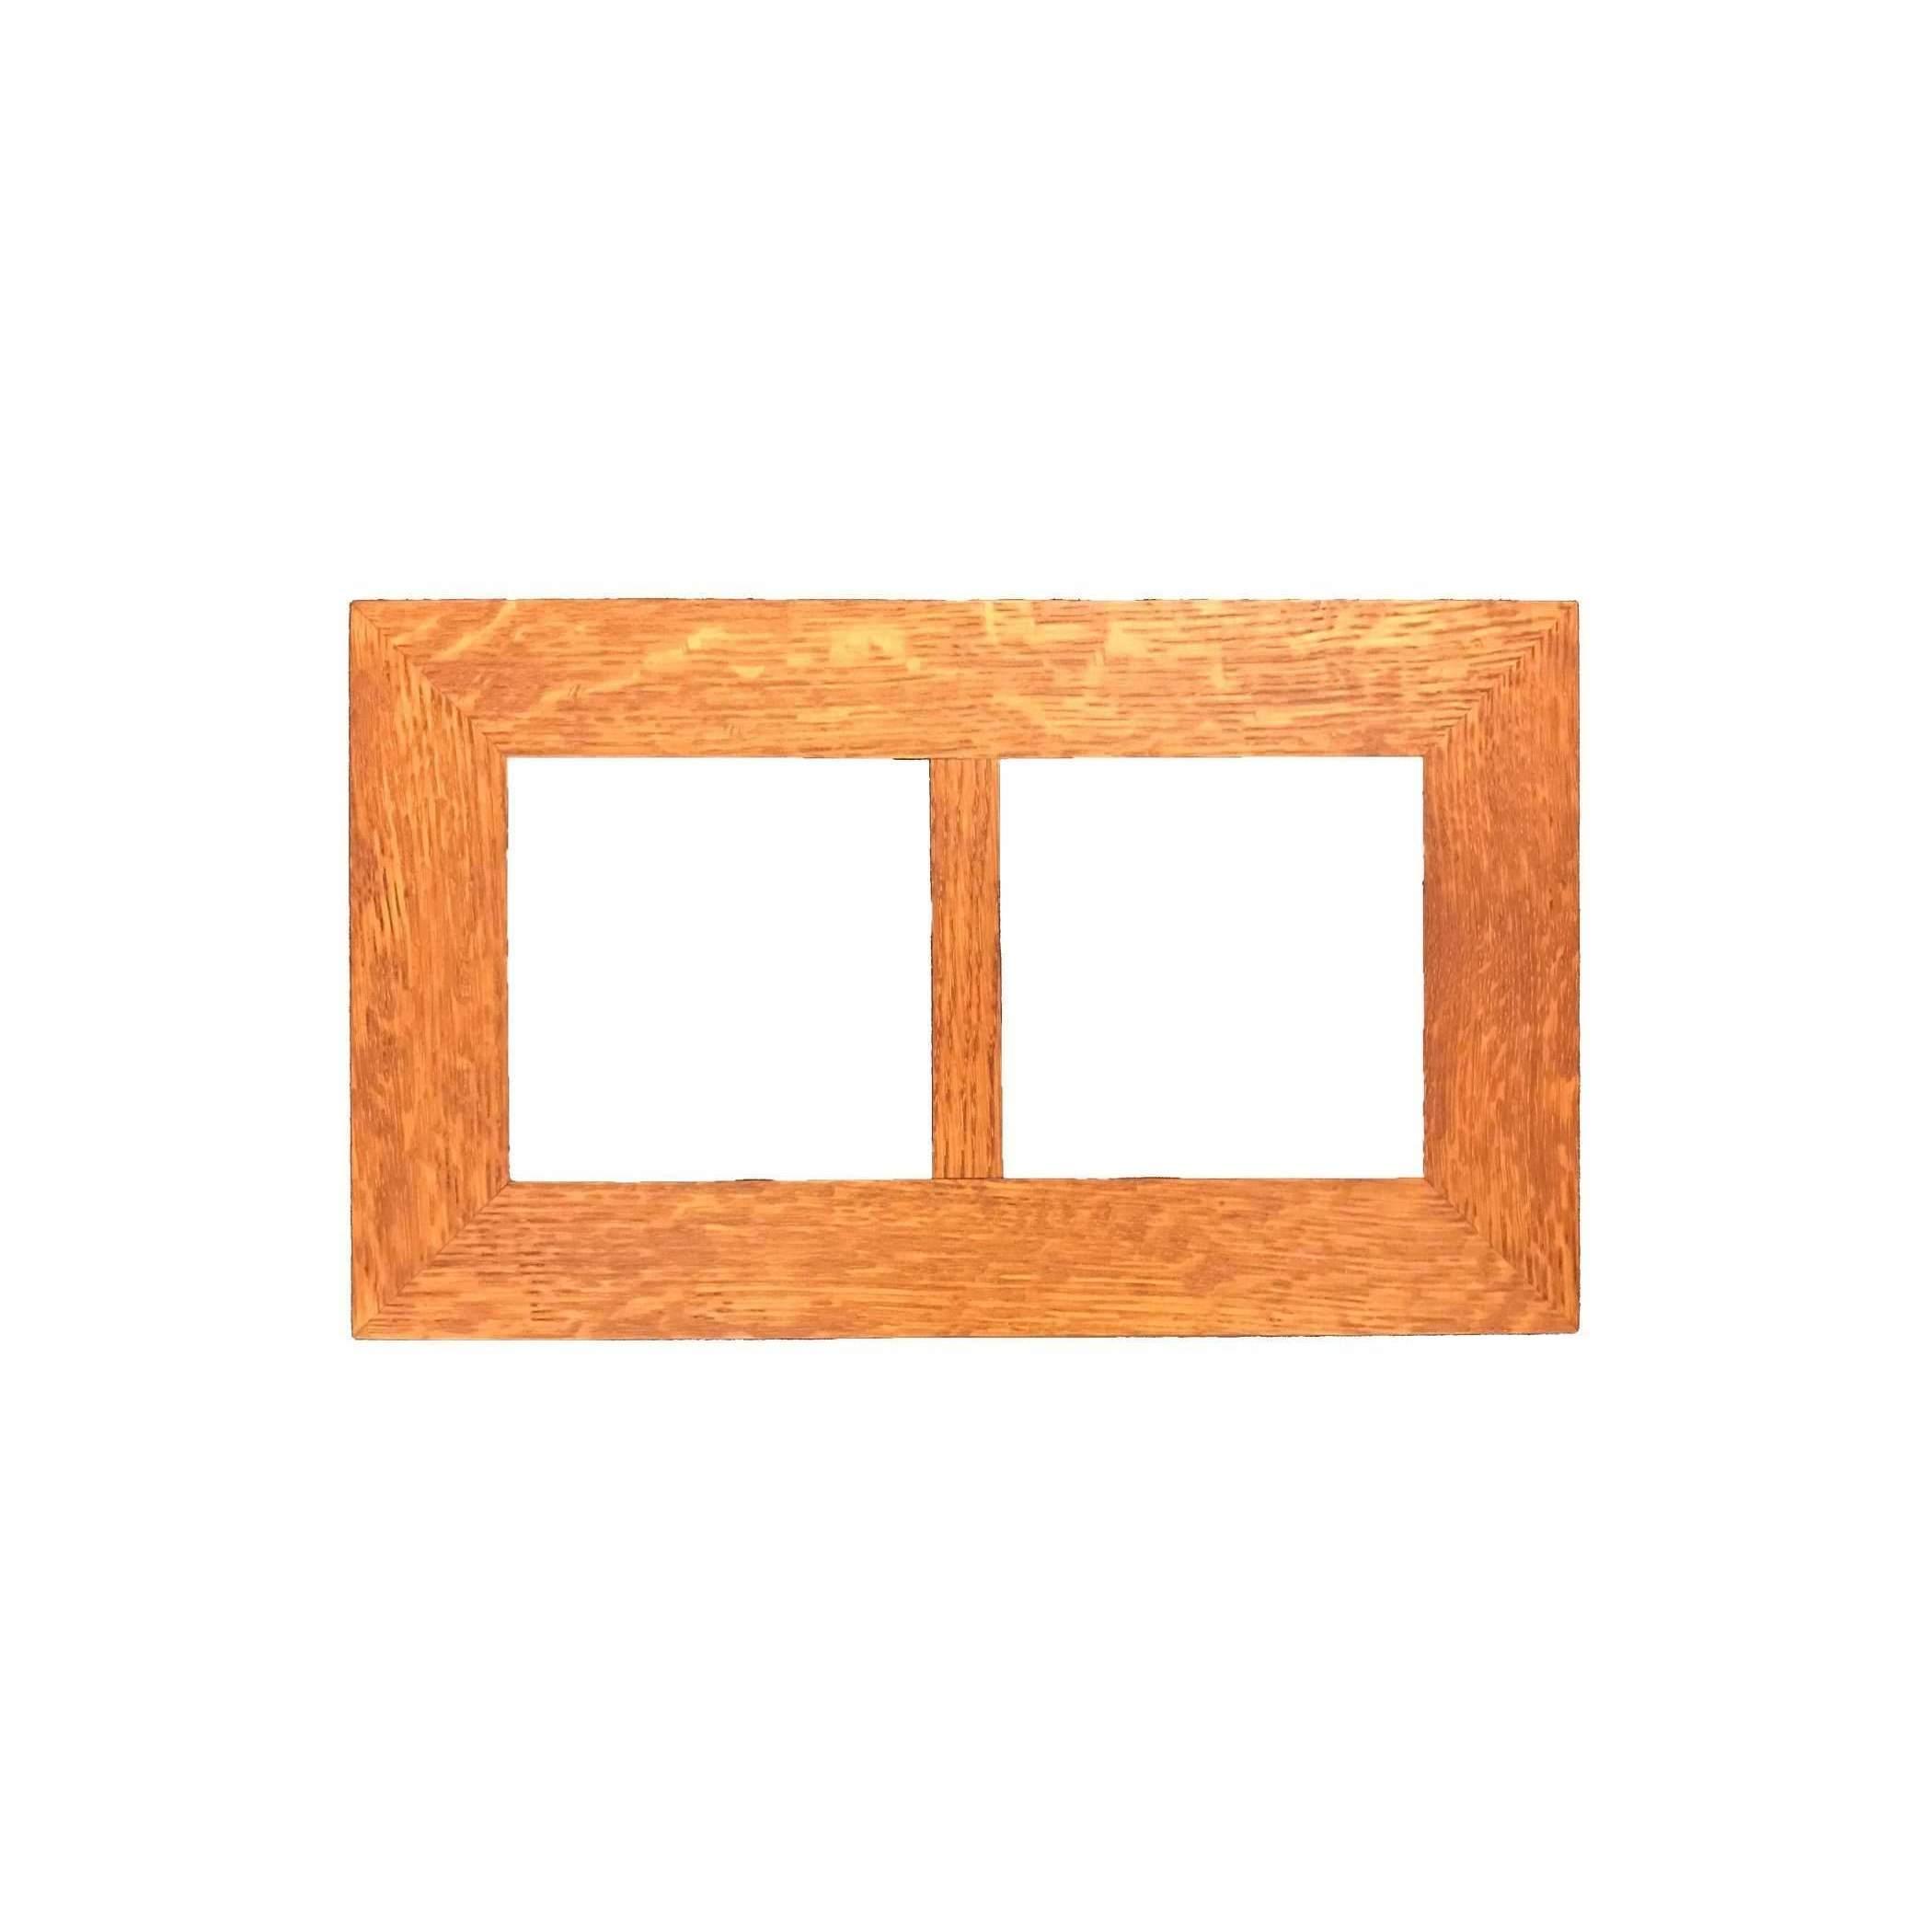 6x6 Tile Frame